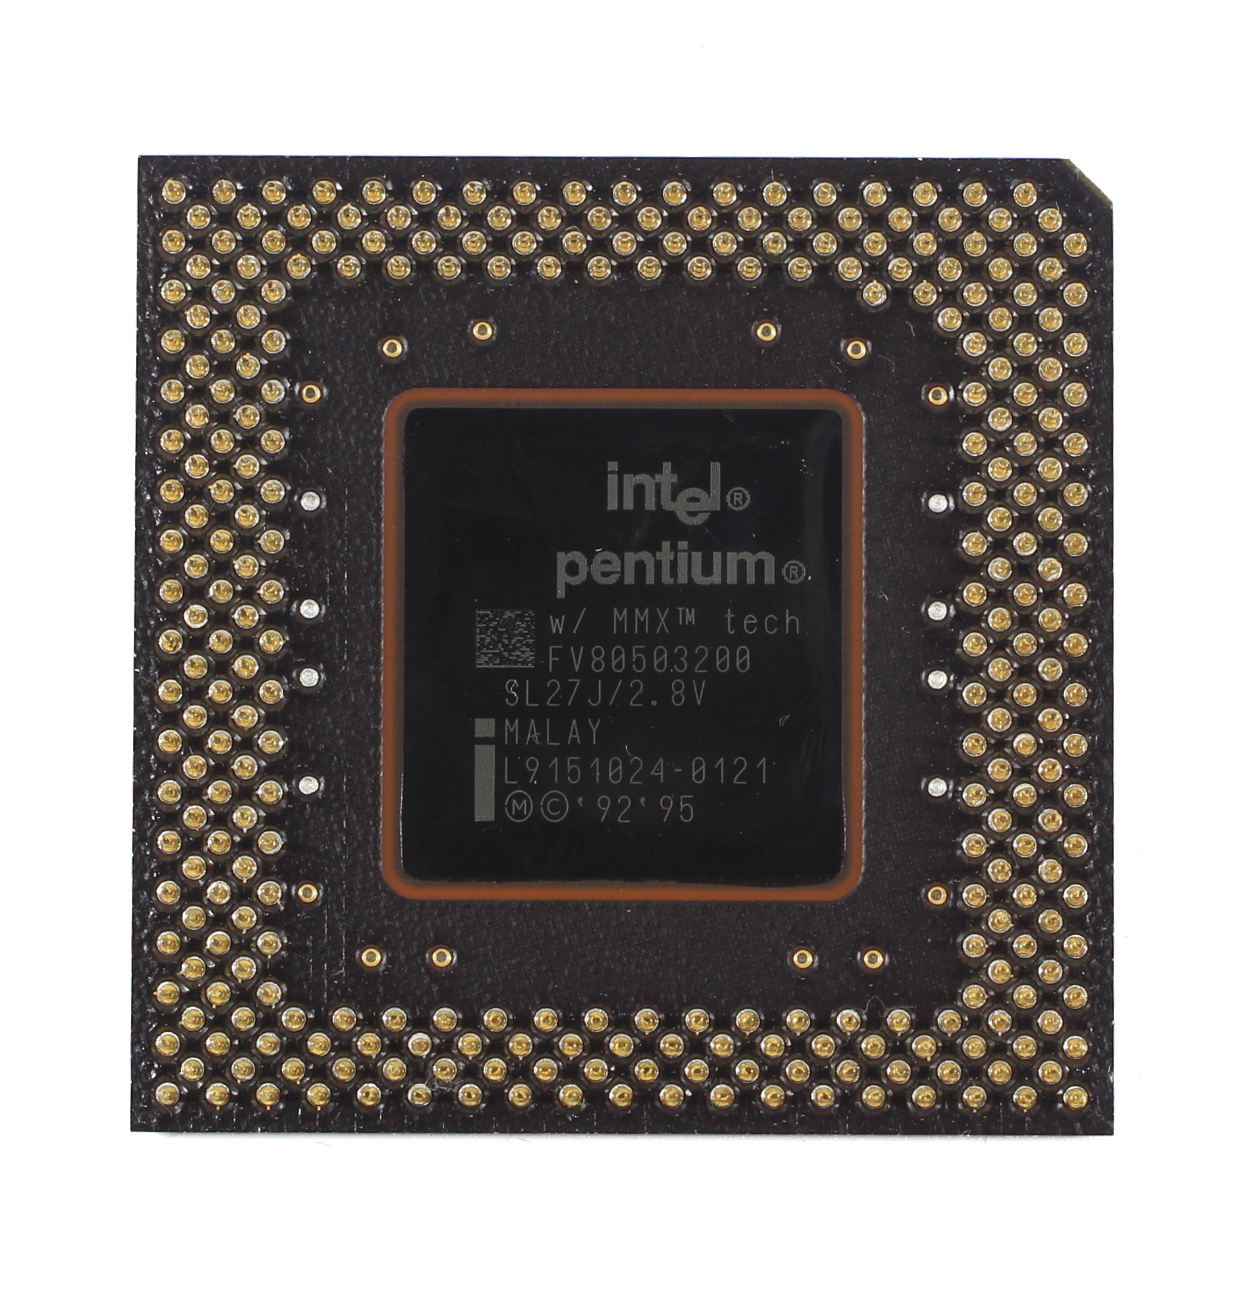 Pentium MMX 200 SL27J